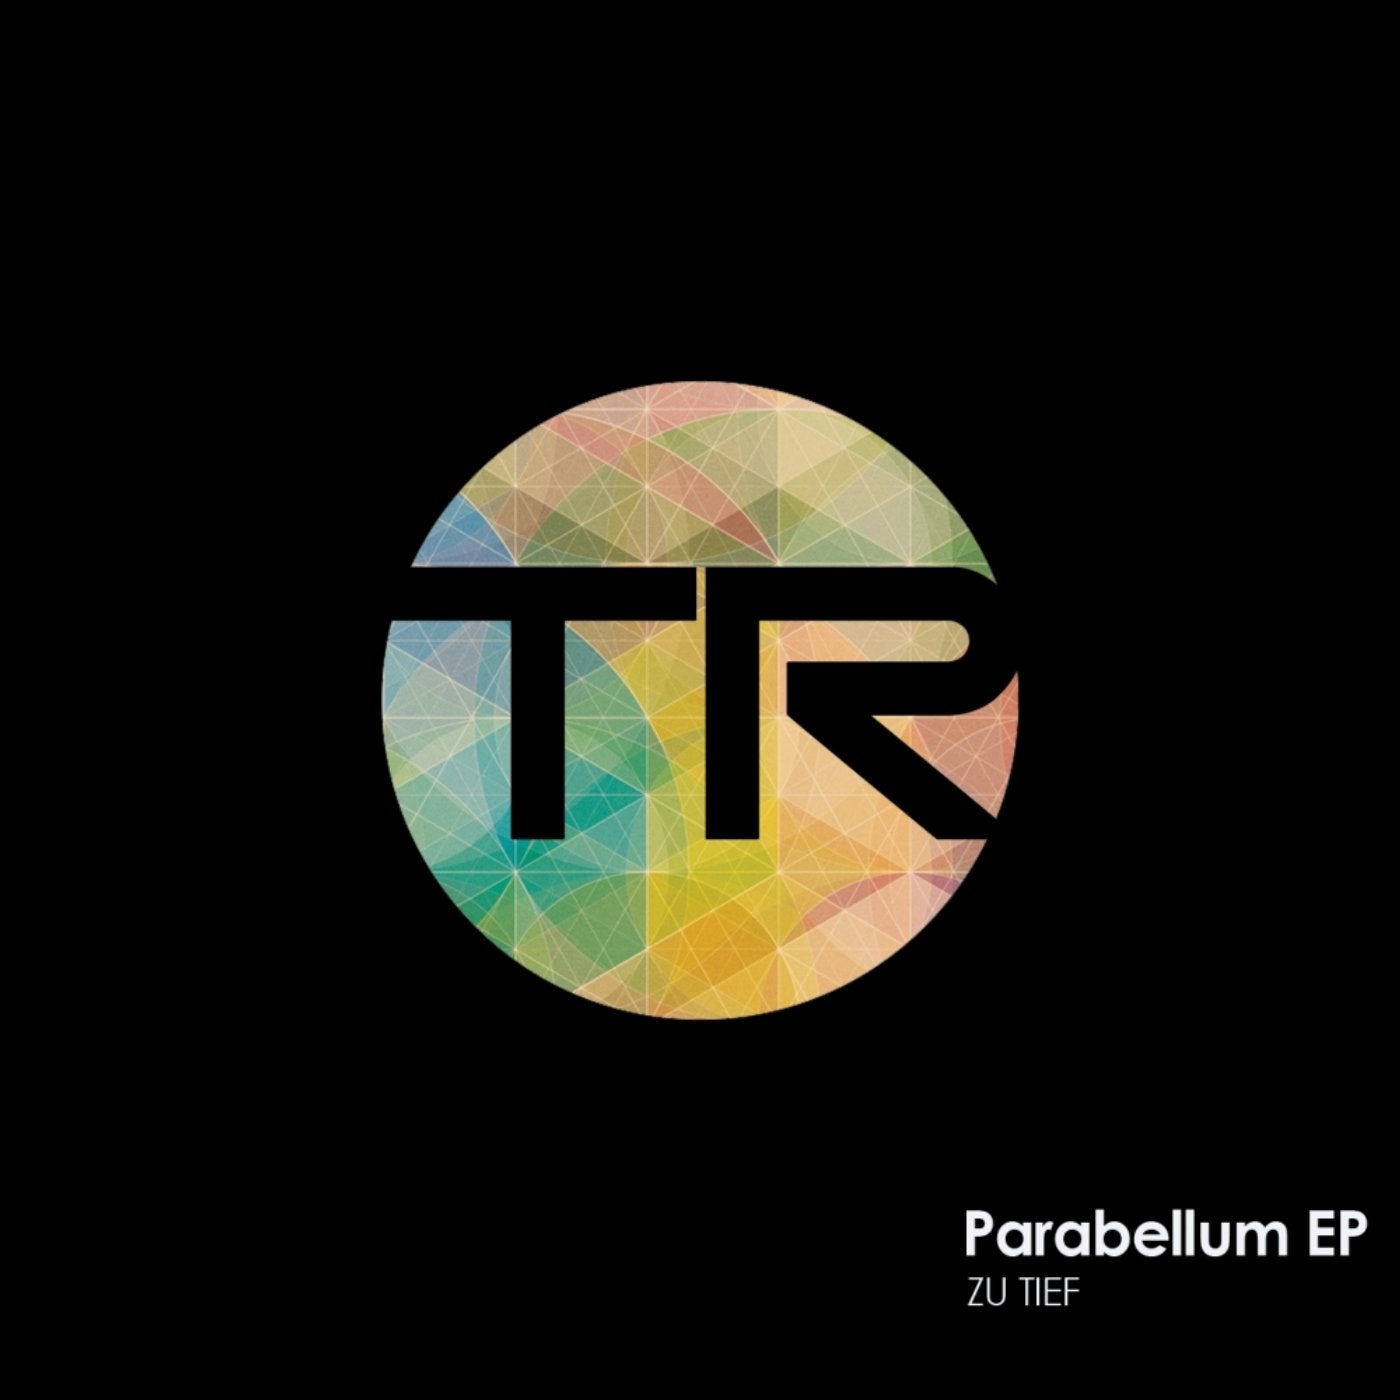 Parabellum EP